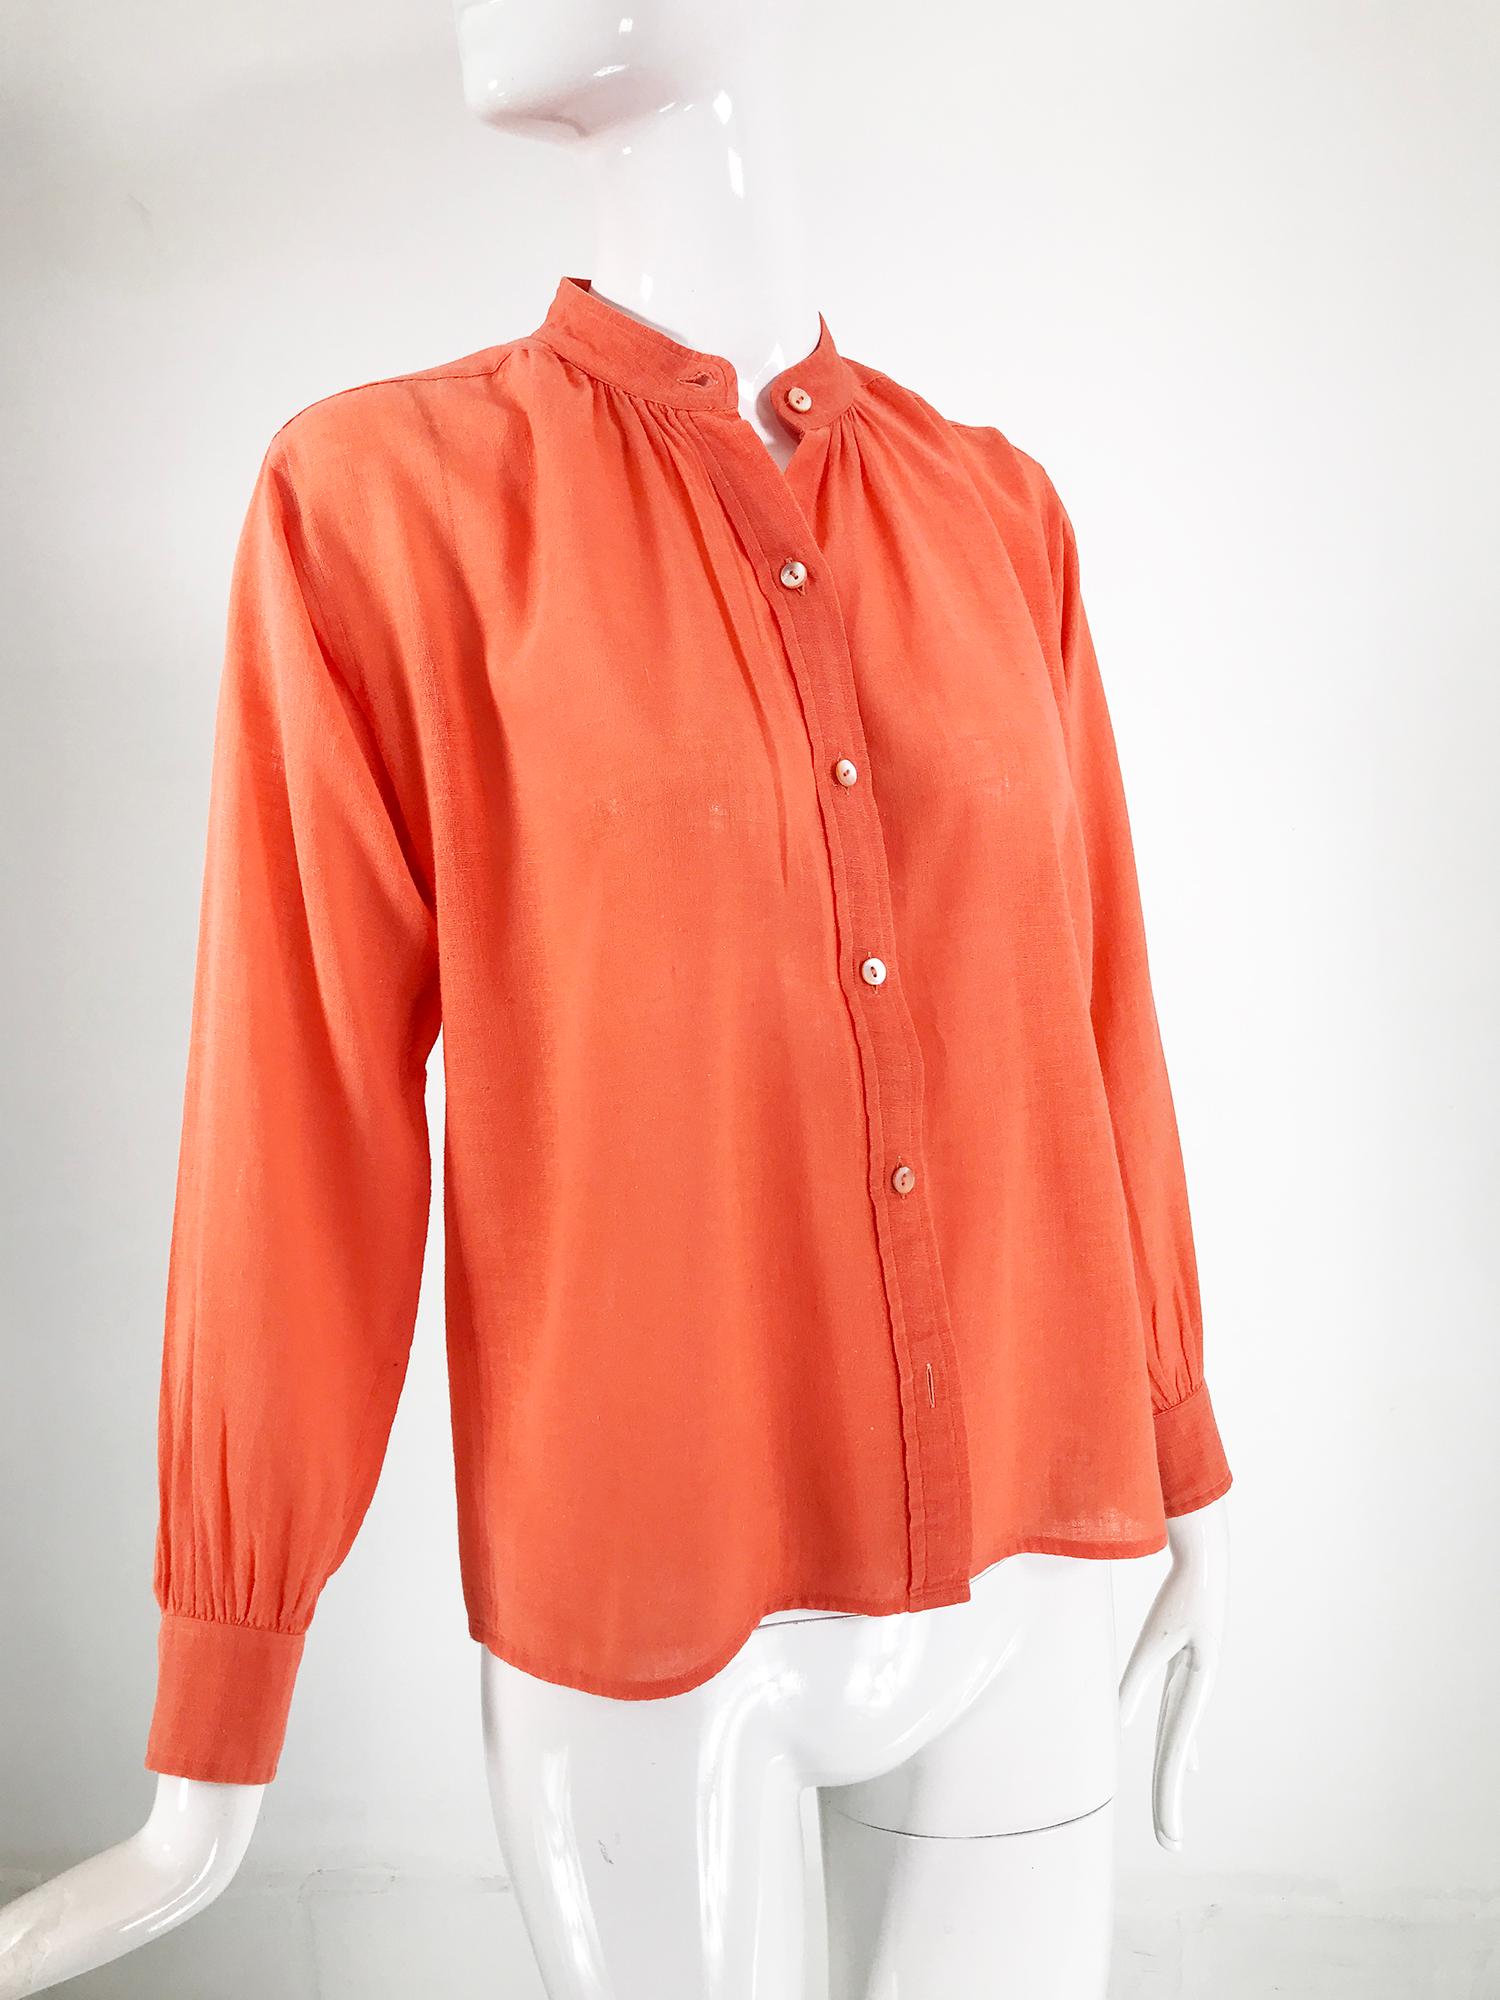 Yves Saint Laurent Rive Gauche Orange Cotton Gauze Blouse 1960s 2